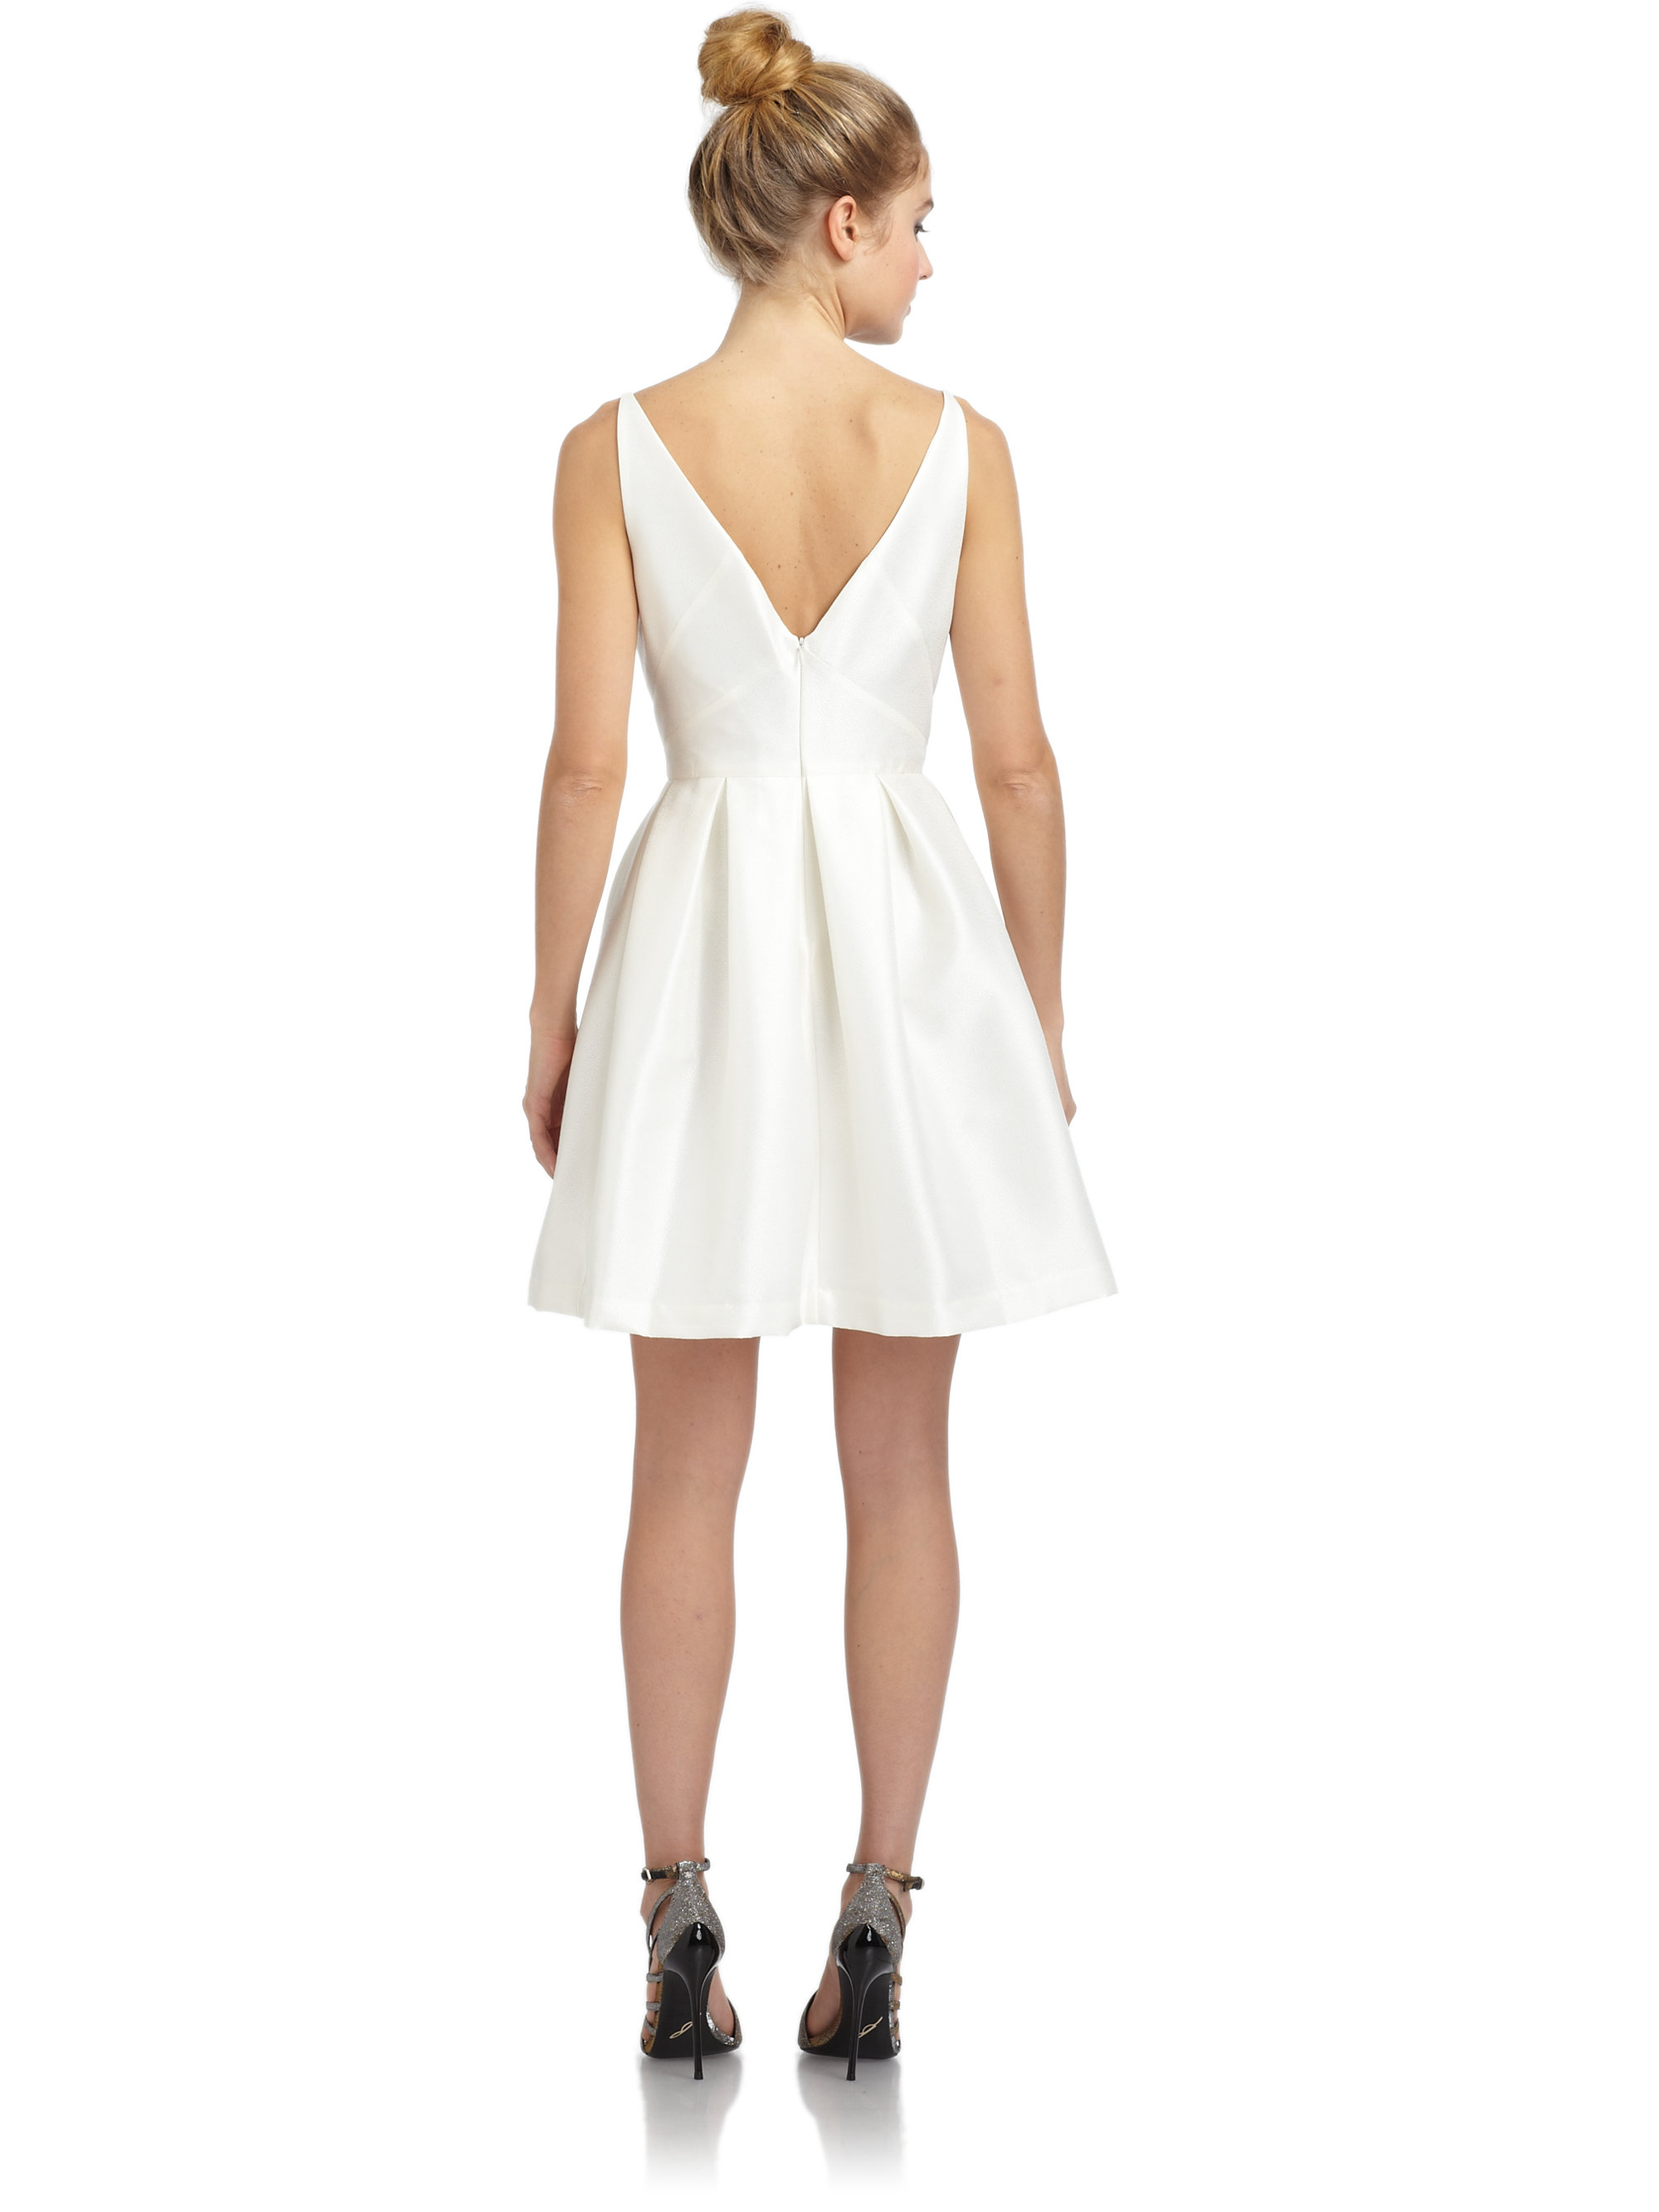 Lyst - Z Spoke By Zac Posen Pleated Faille Dress in White